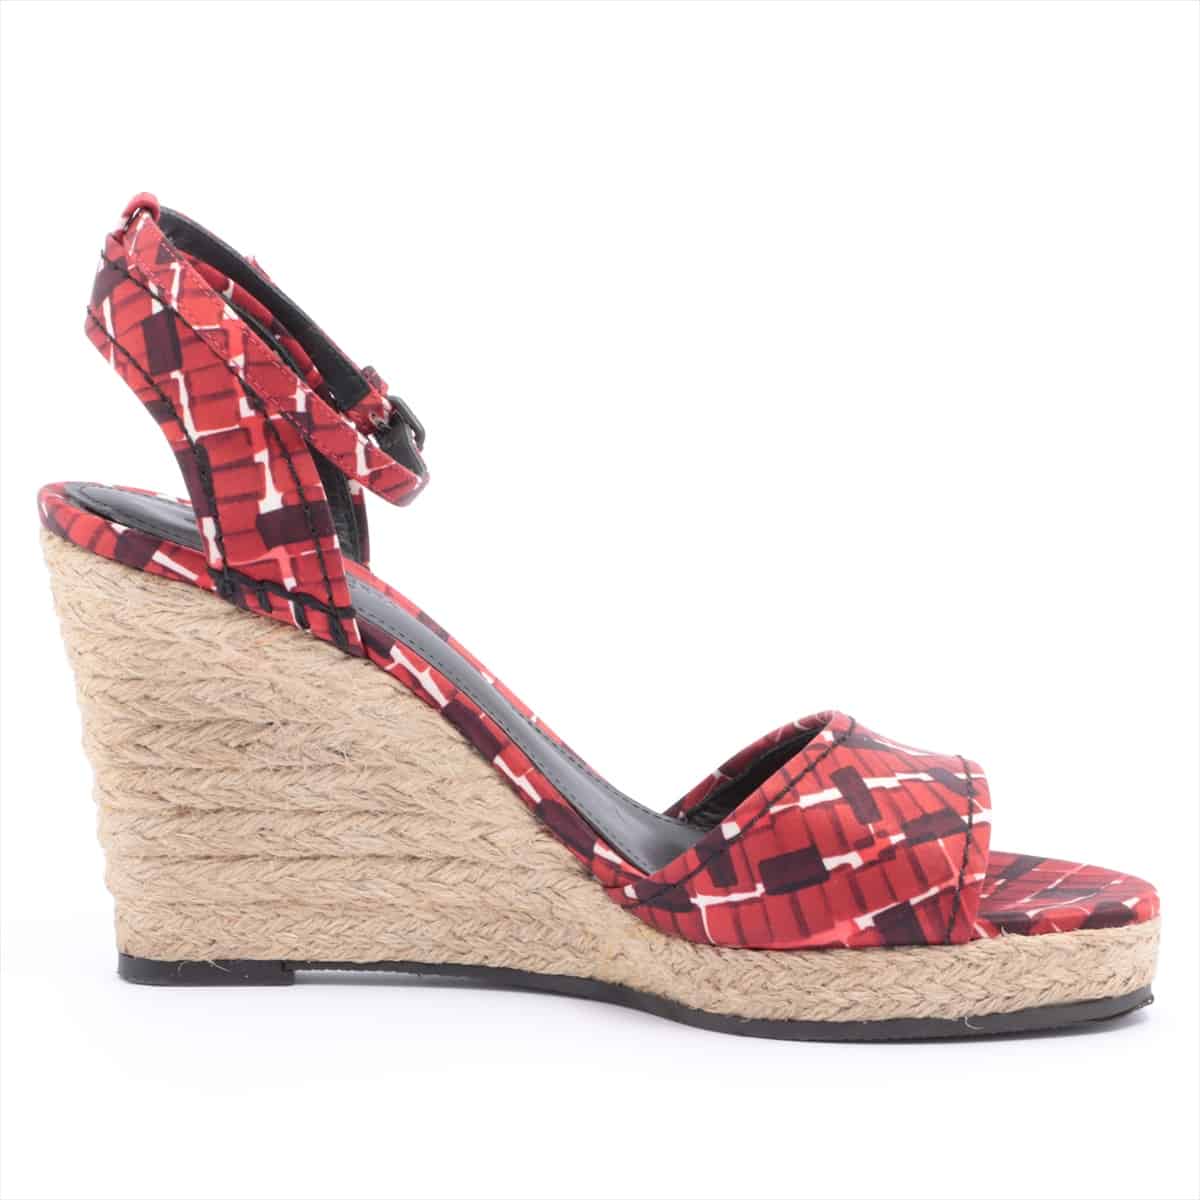 Bottega Veneta Fabric Wedge Sole Sandals 36 1/2 Ladies' Red Strap